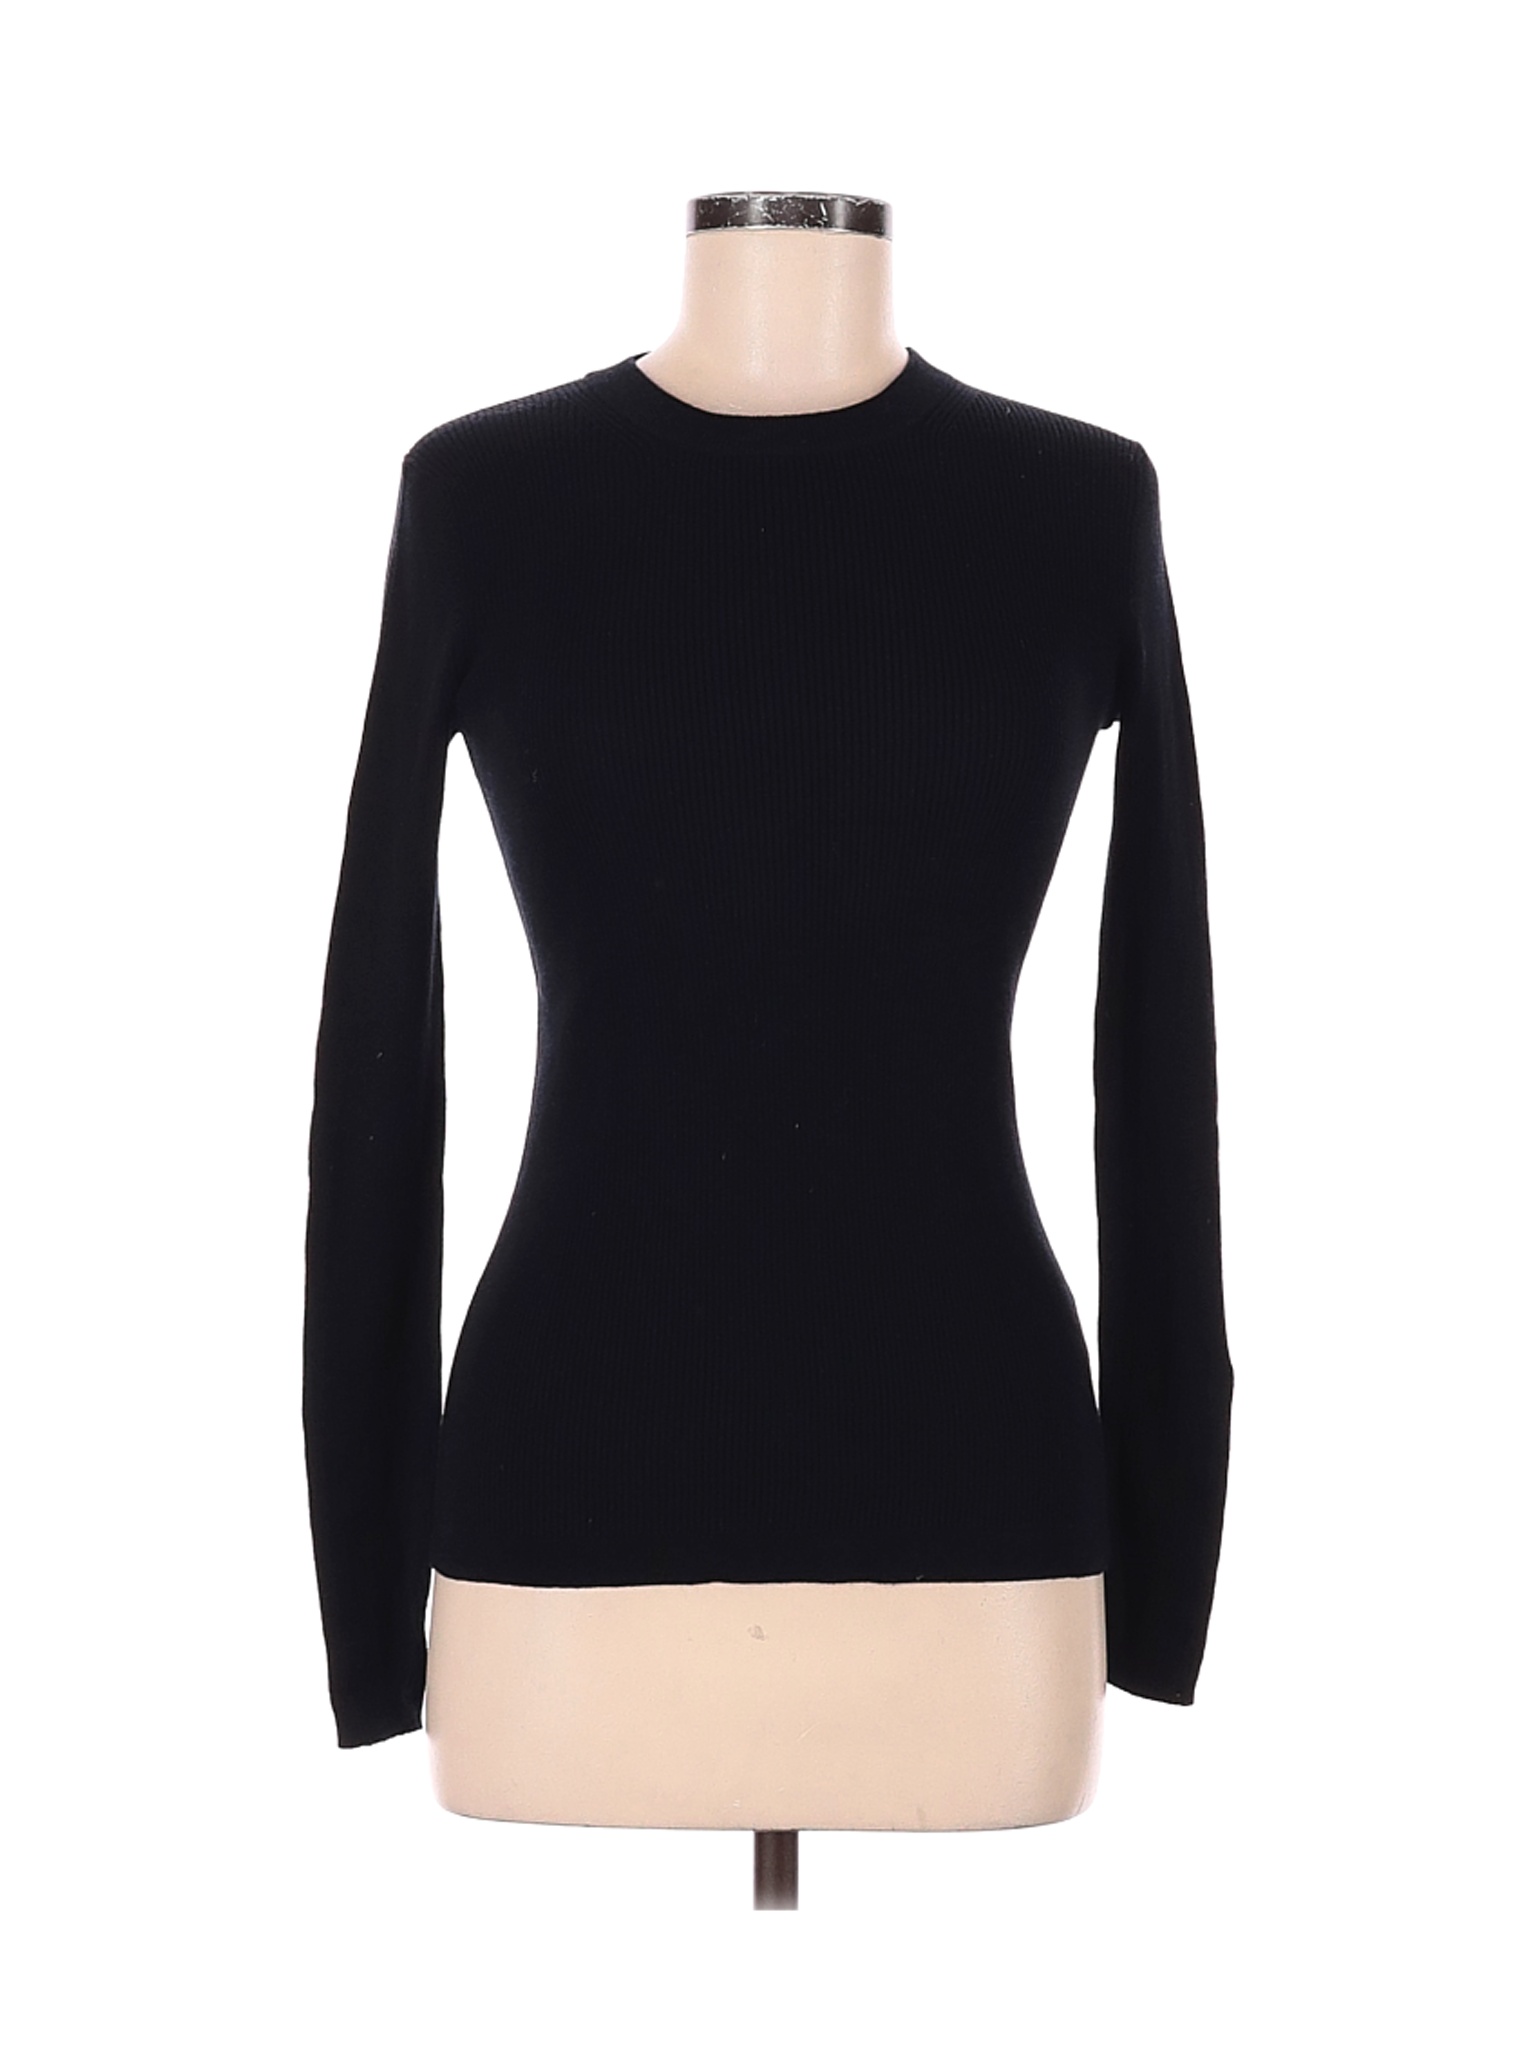 J.Crew Women Black Long Sleeve Top XS | eBay